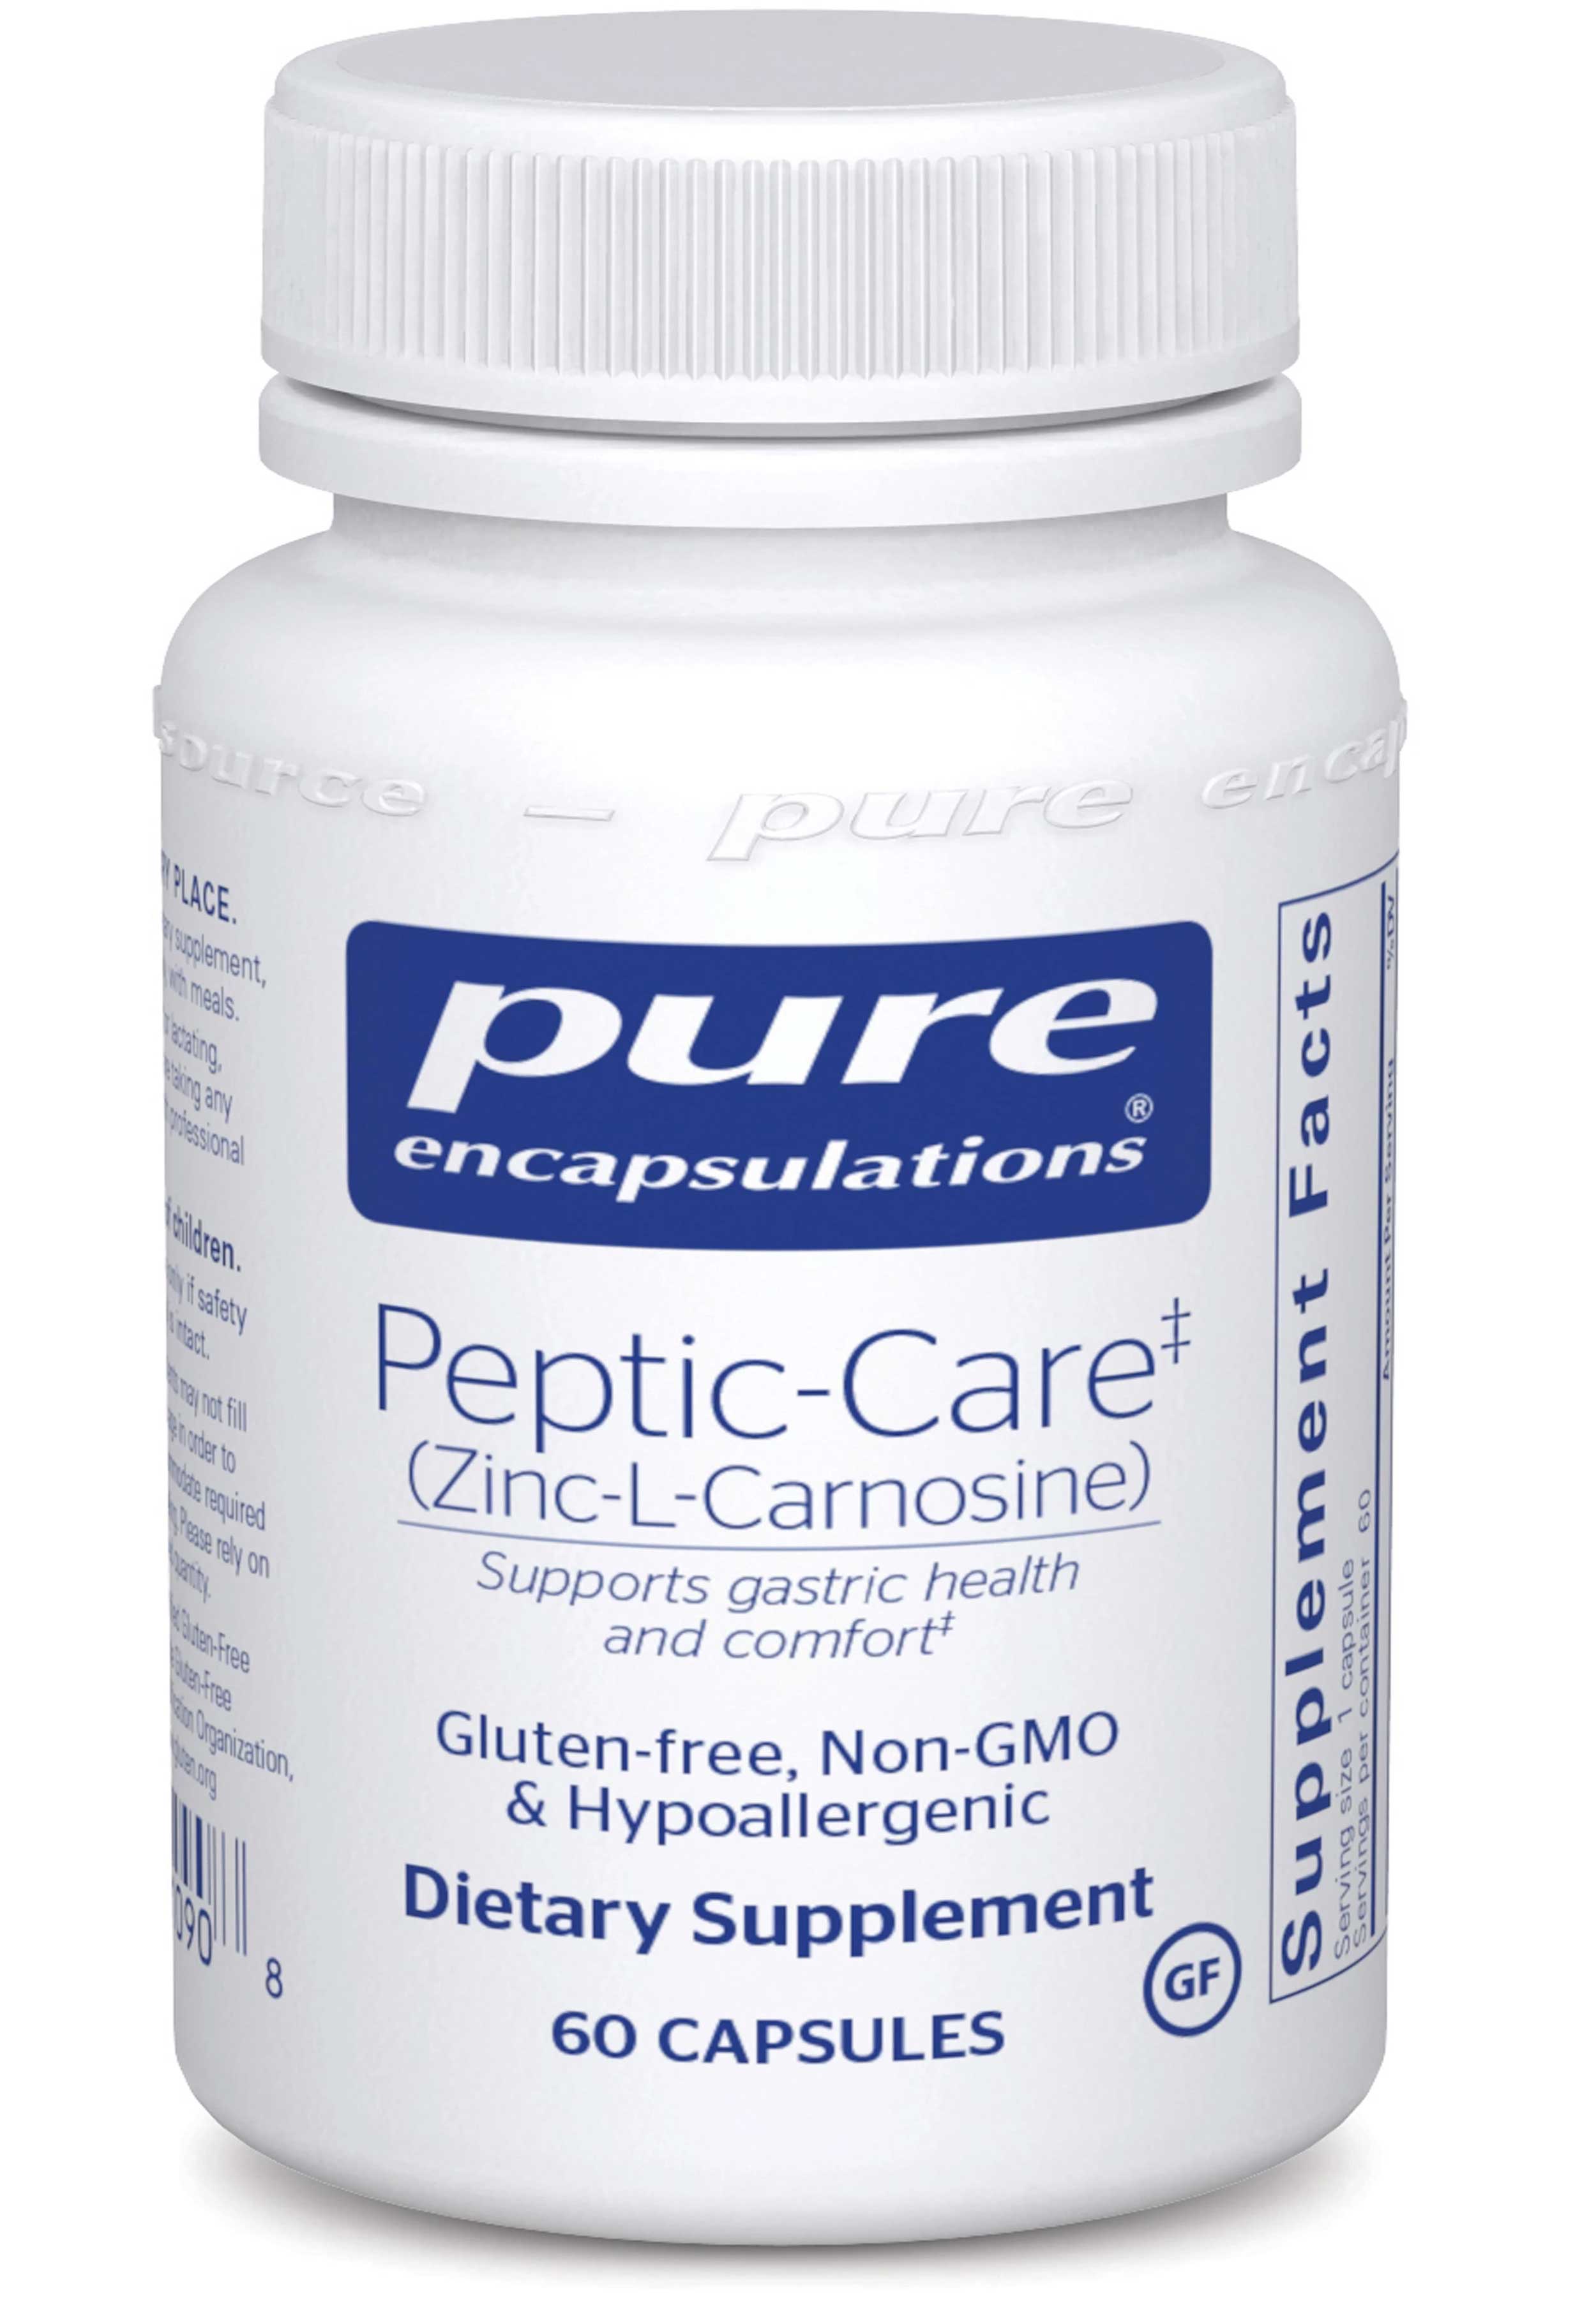 Pure Encapsulations Peptic-Care (Zinc-L-Carnosine)